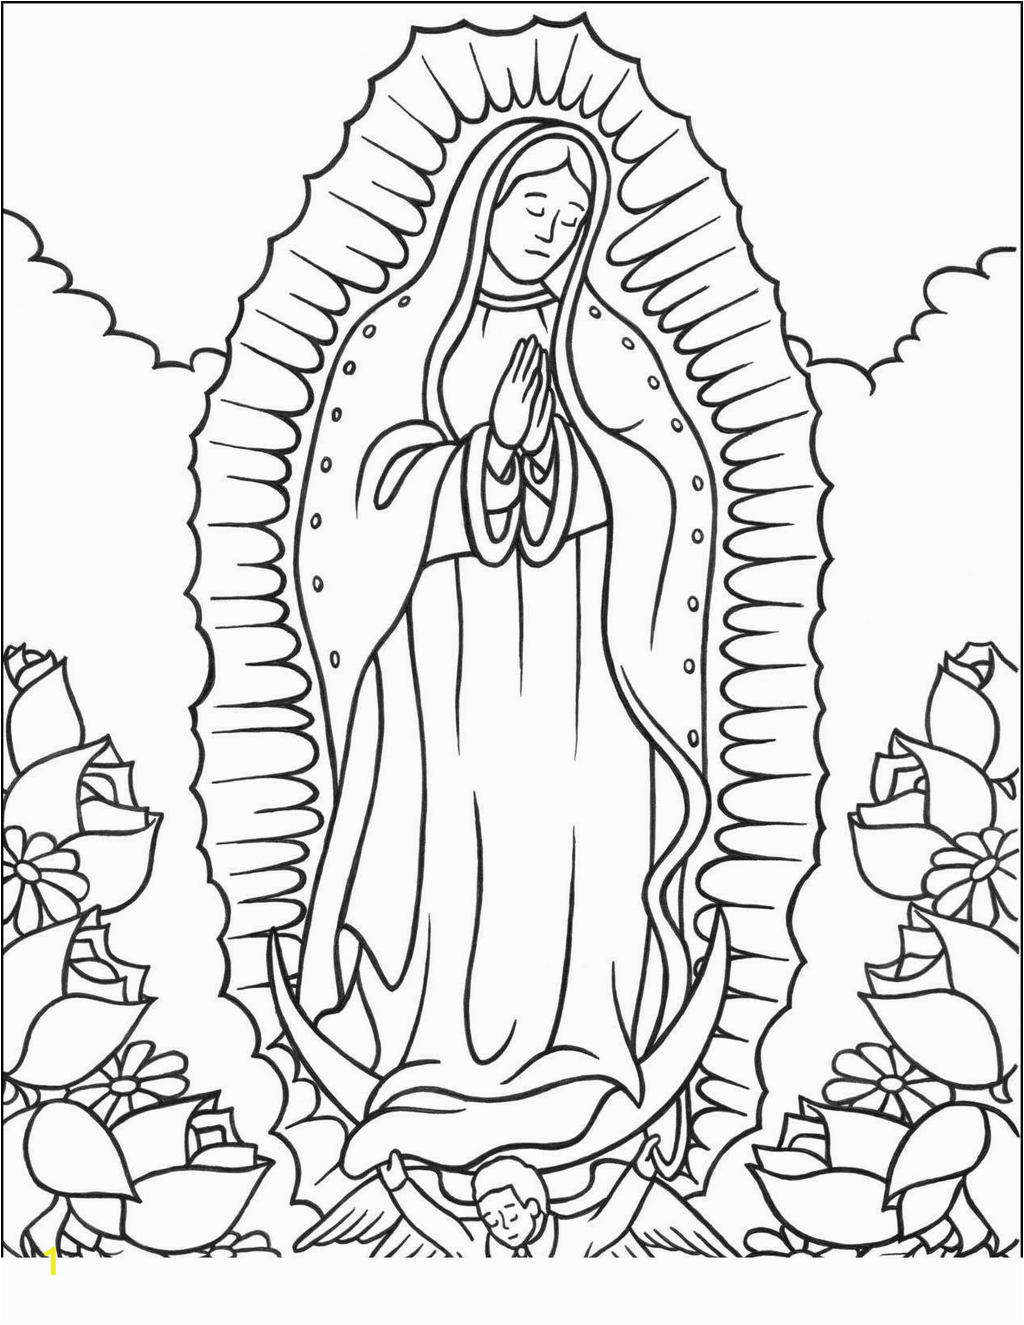 Coloring Pages Of La Virgen De Guadalupe Our Lady Guadalupe Coloring Page for Kids Wallpapers